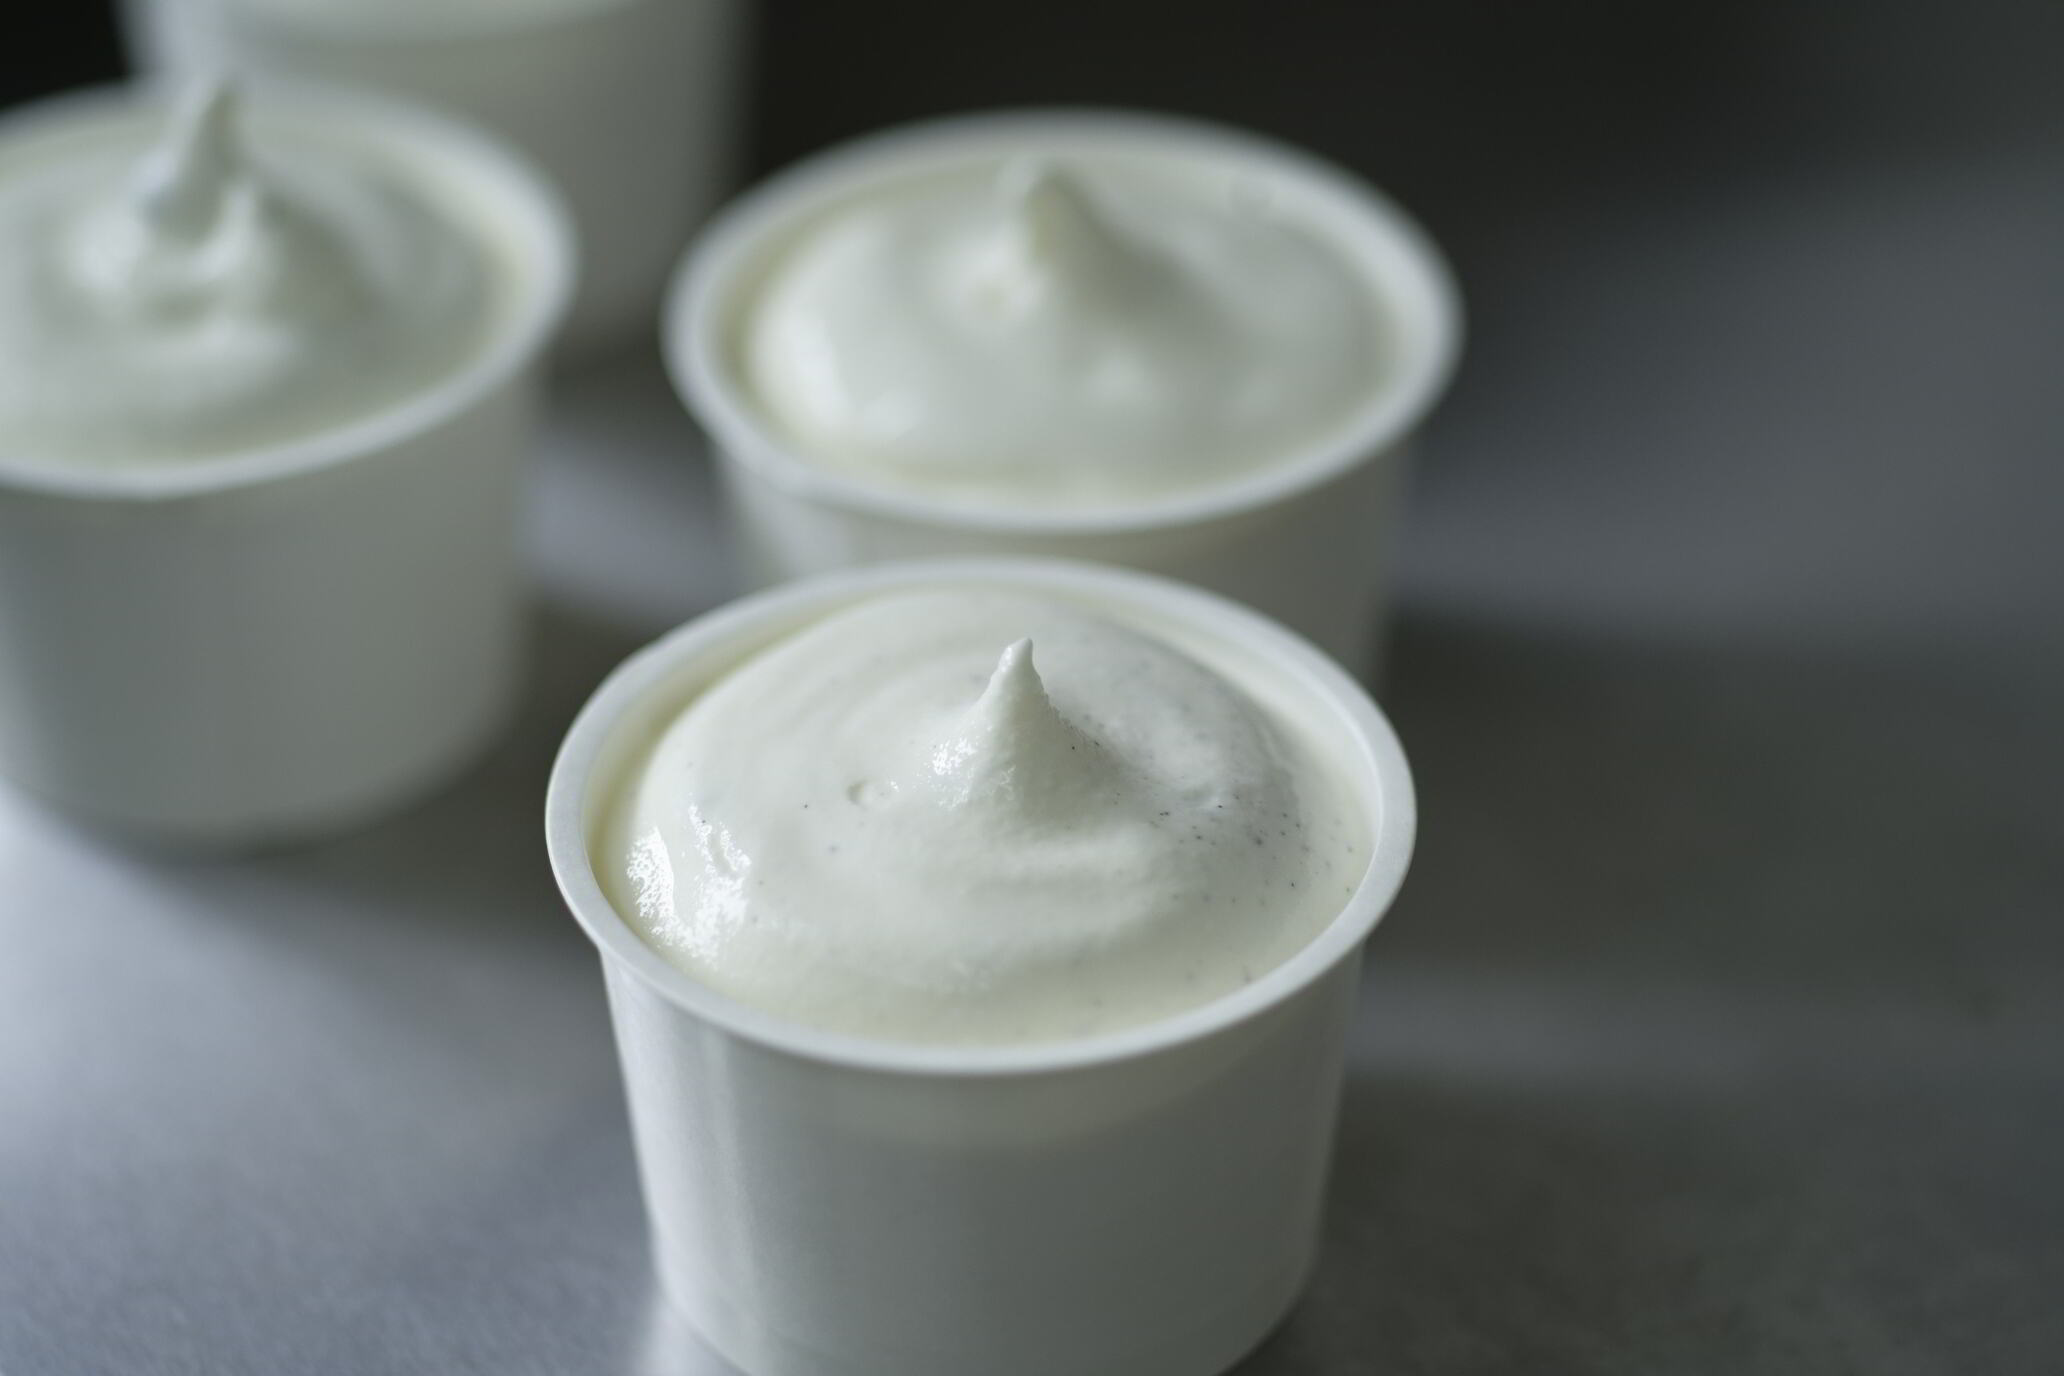 ひらかわ牧場のしぼりたて生乳で作ったアイスクリーム【2Lパック2個セットA】